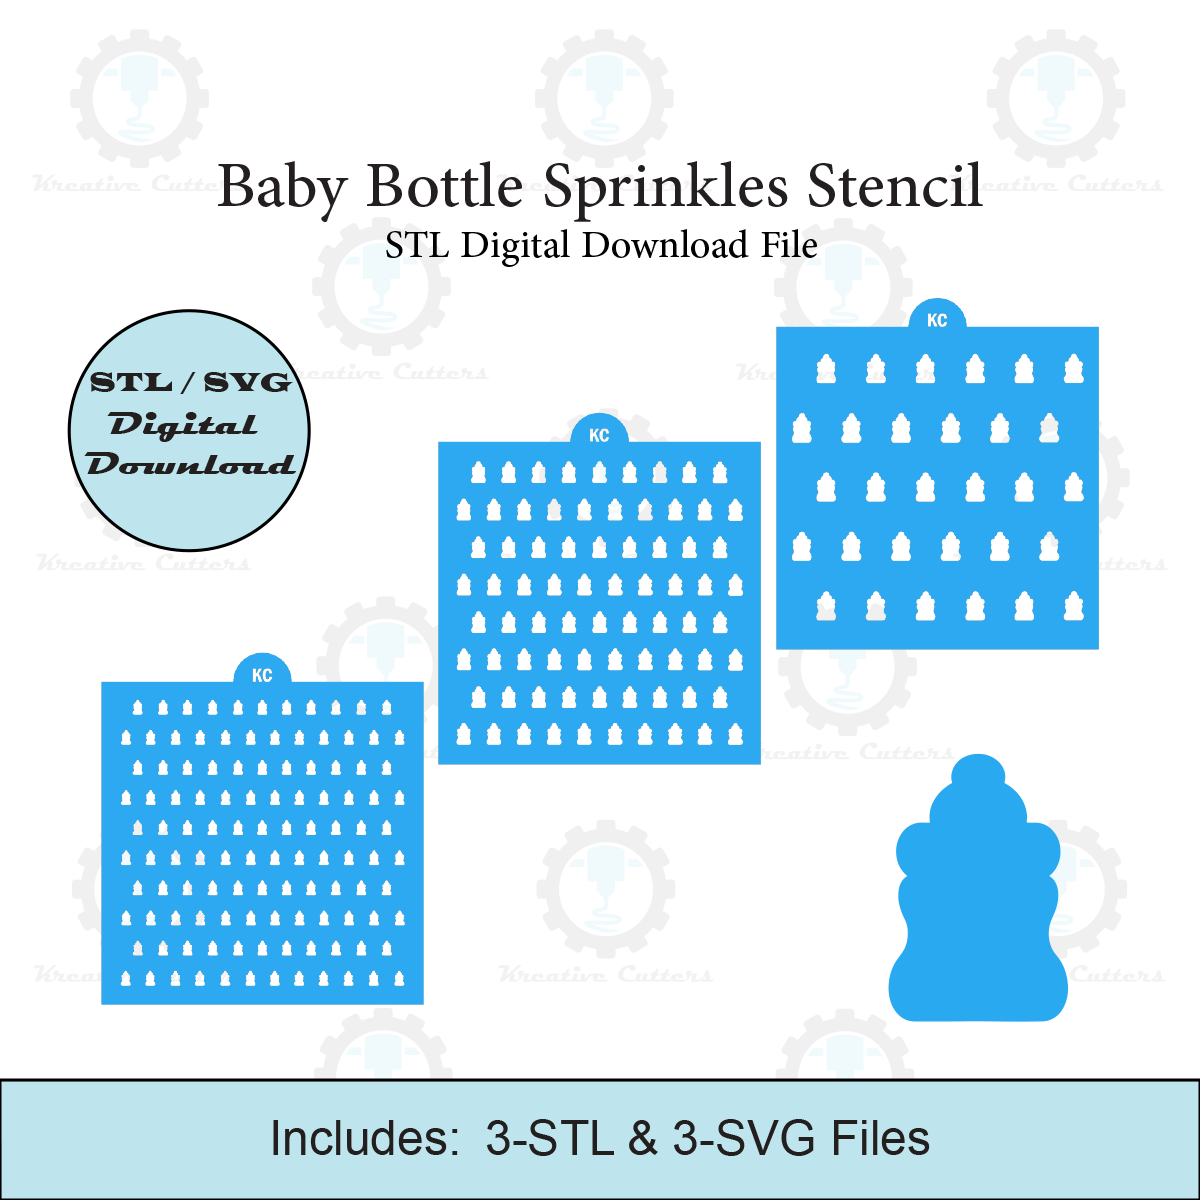 Baby Bottle Sprinkles Stencil | Laser or 3D Printed, Decorating Stencils | Digital Download STL & SVG Files